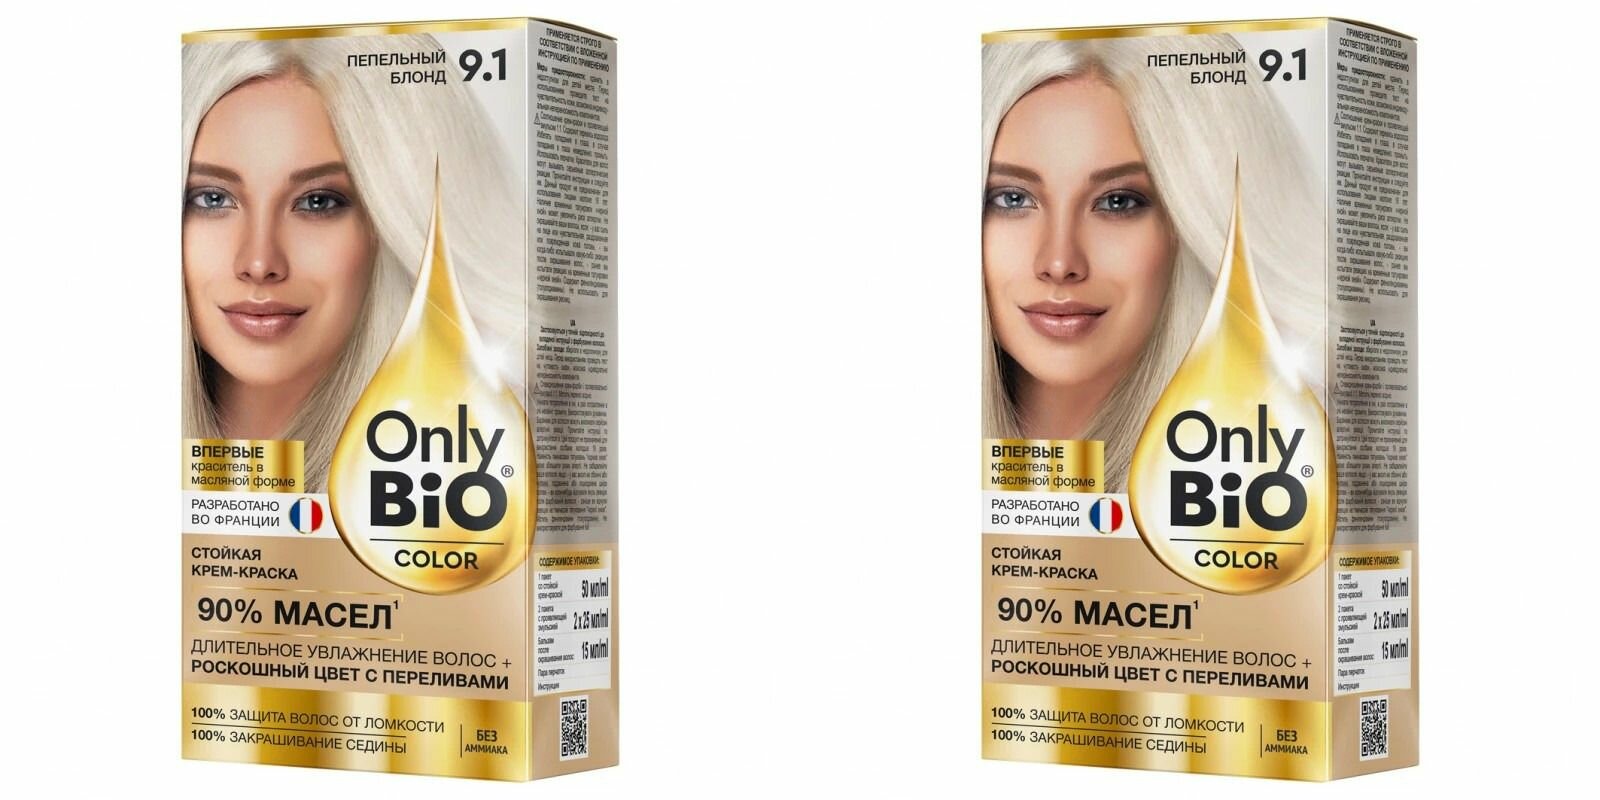 Fito Косметик Крем-Краска для волос без аммиака, Only Bio Color, тон 9.1, Пепельный блонд, 115 мл, 2 штуки